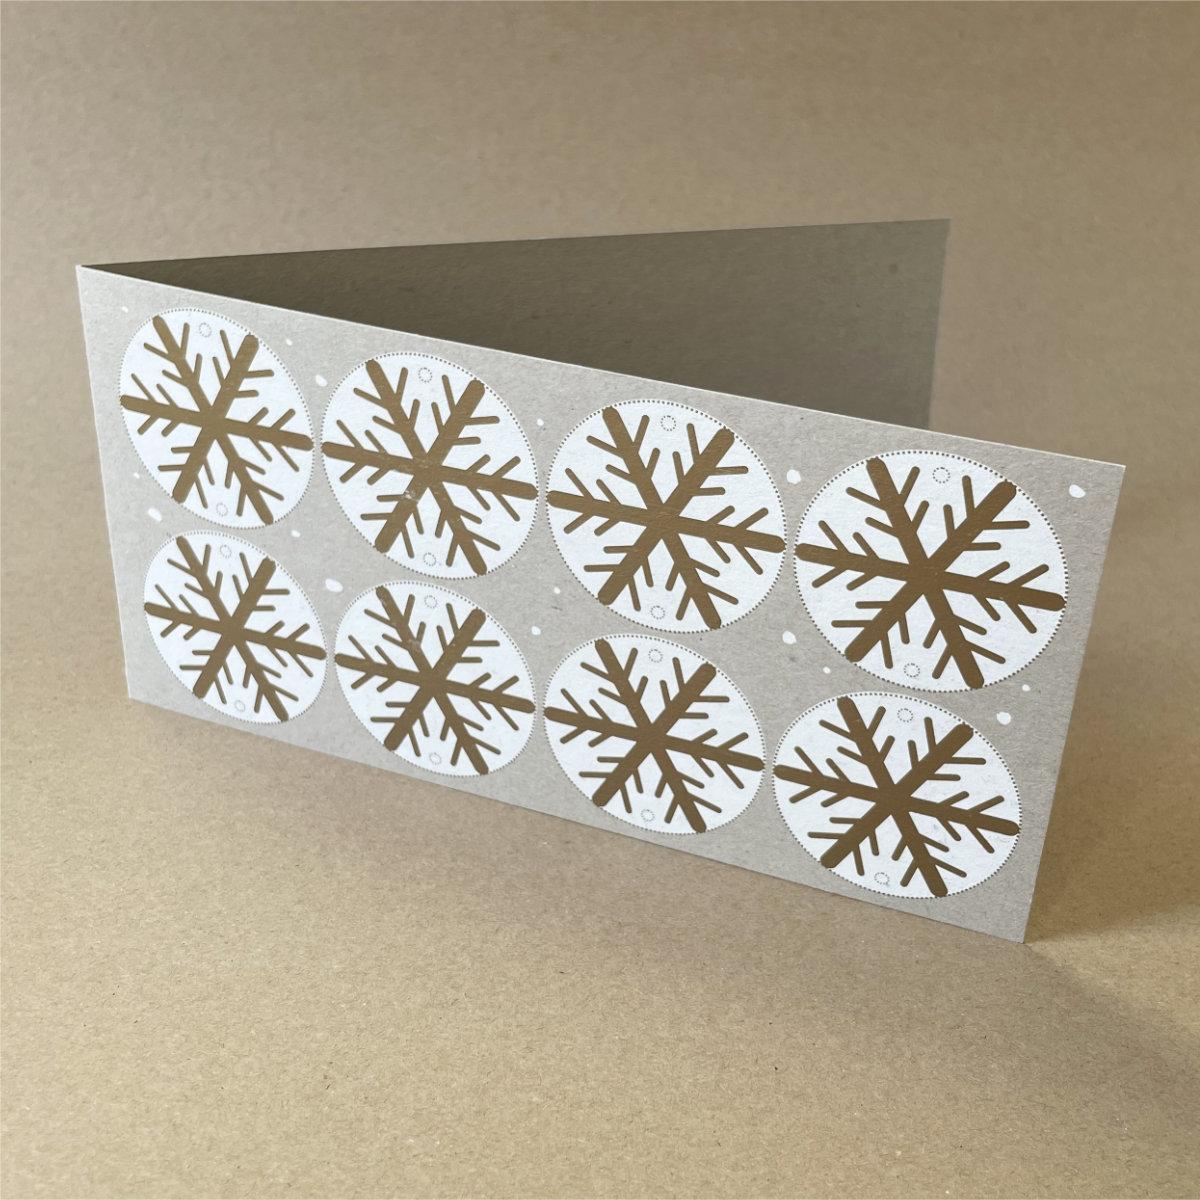 Recycling-Weihnachtskarte: Schneegestöber